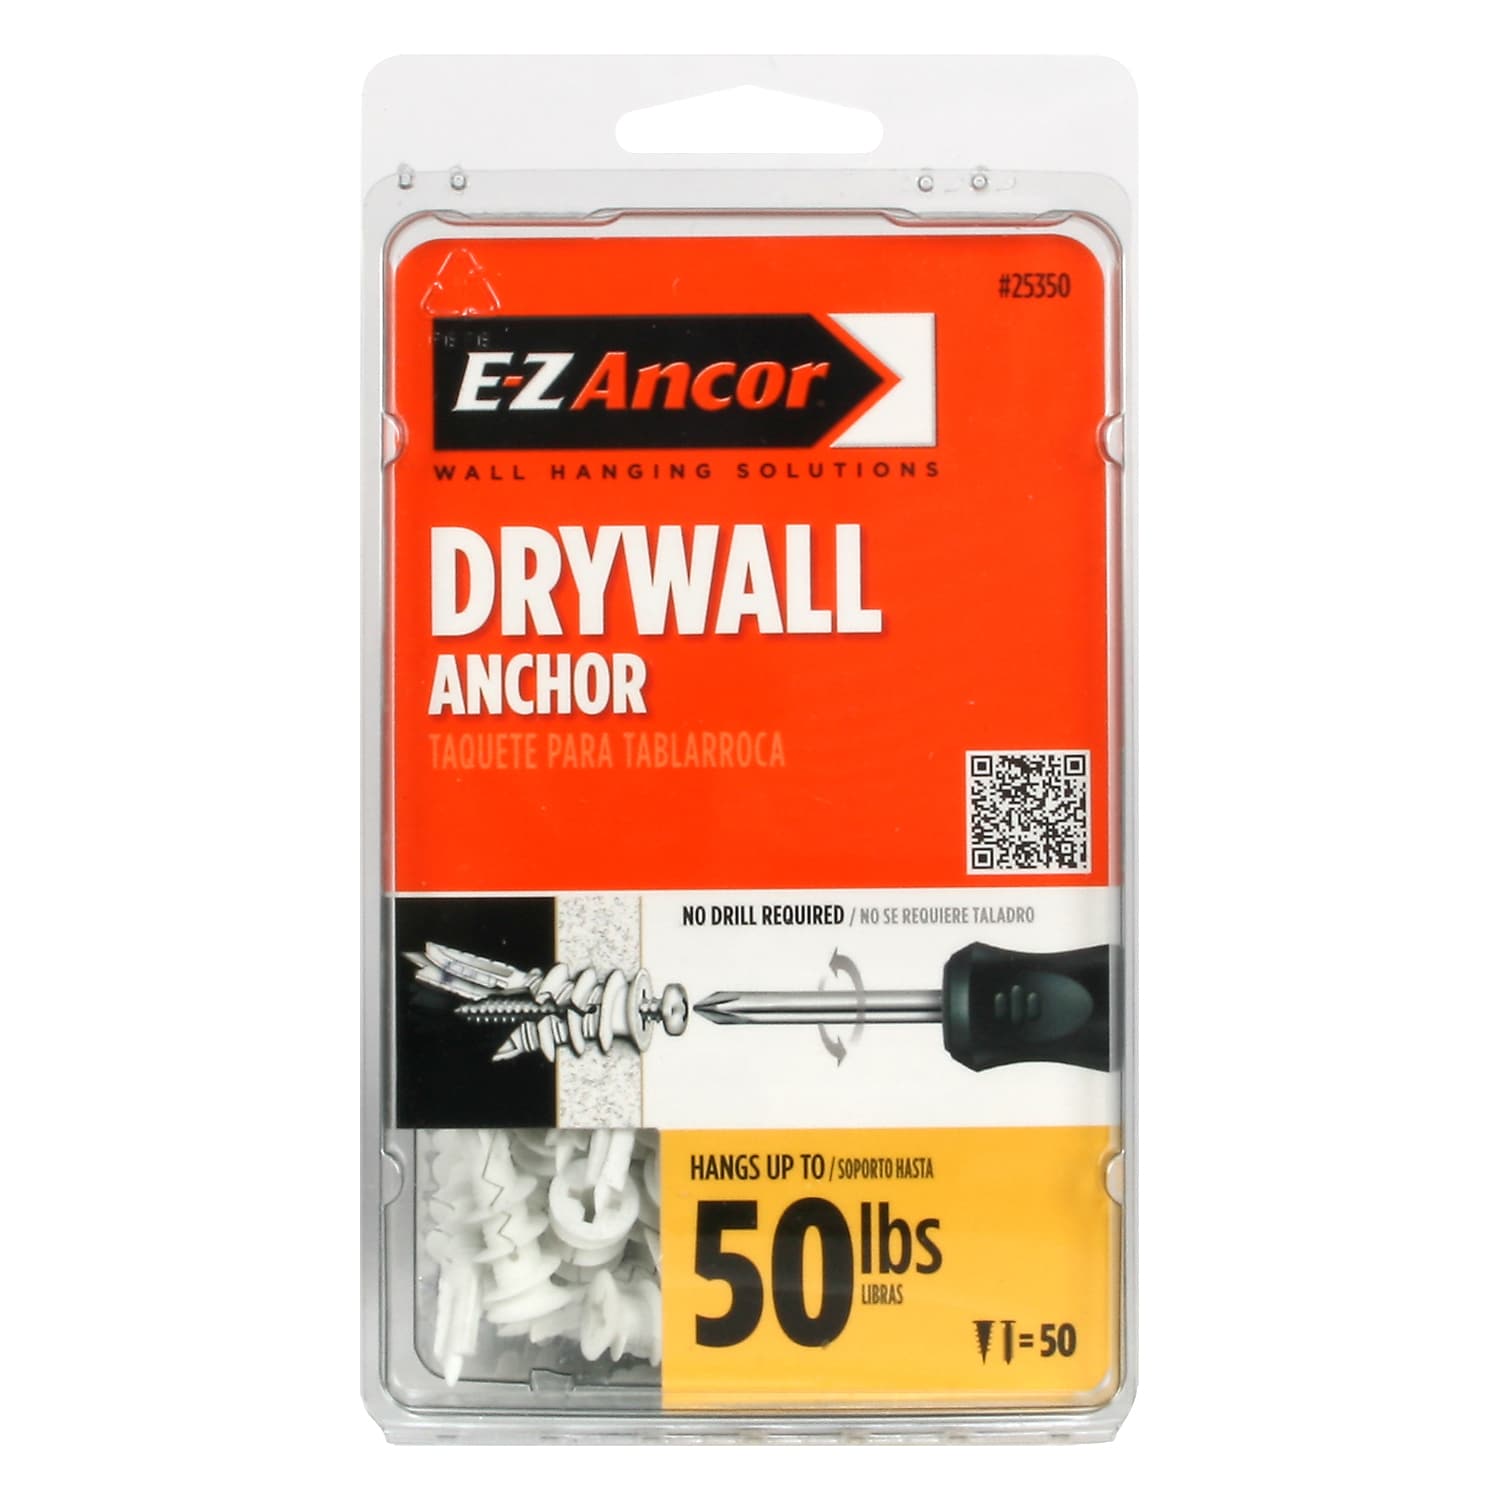 Card E.Z 10 Anchor Wall Anchors And Screws 50 Lb